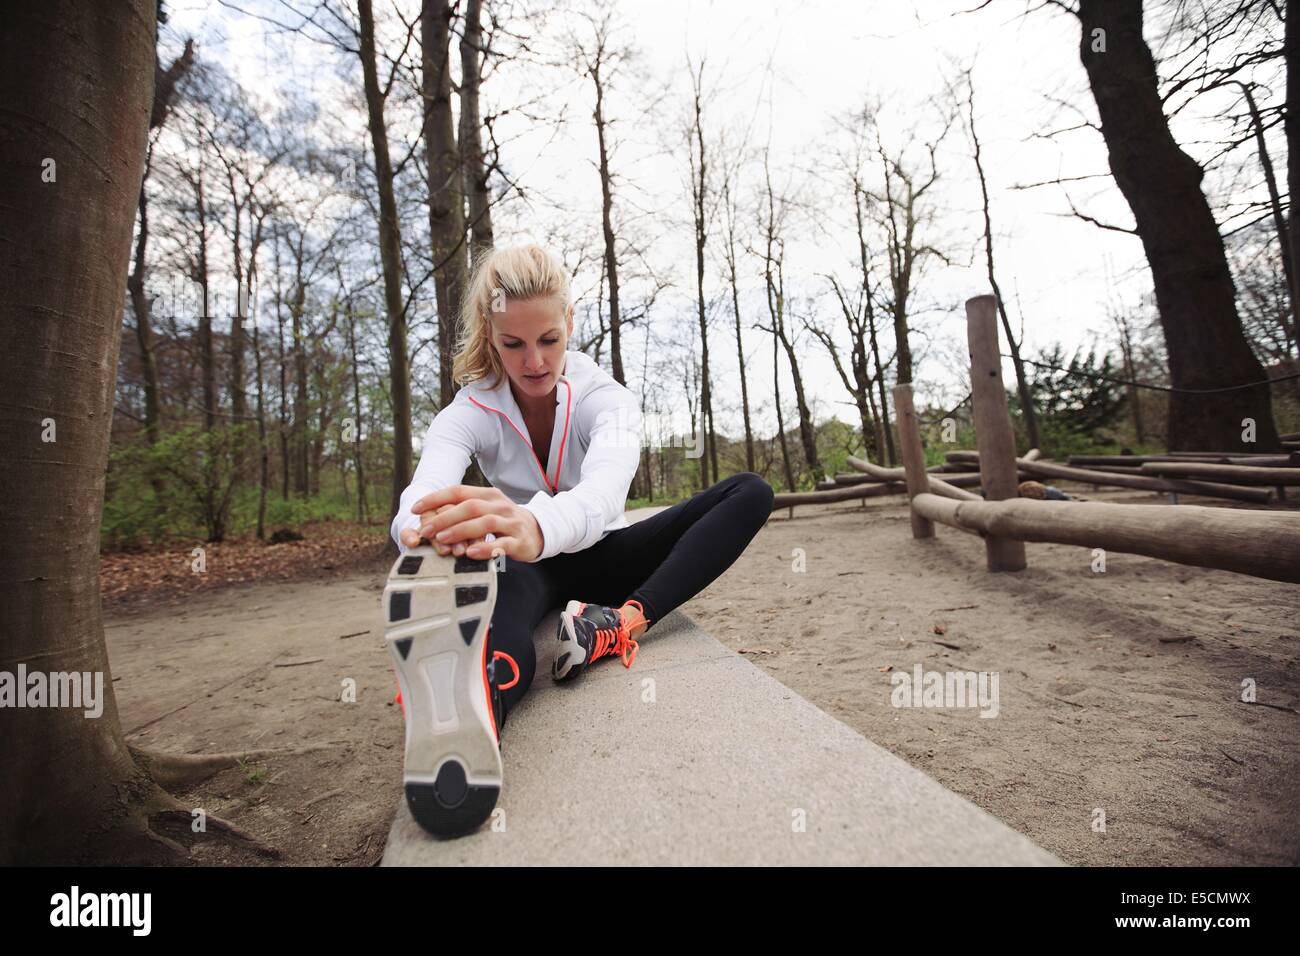 Passen Sie die Frau ihre Beine vor einem Lauf. Kaukasische weibliches Modell Gymnastik im Park. Stockfoto